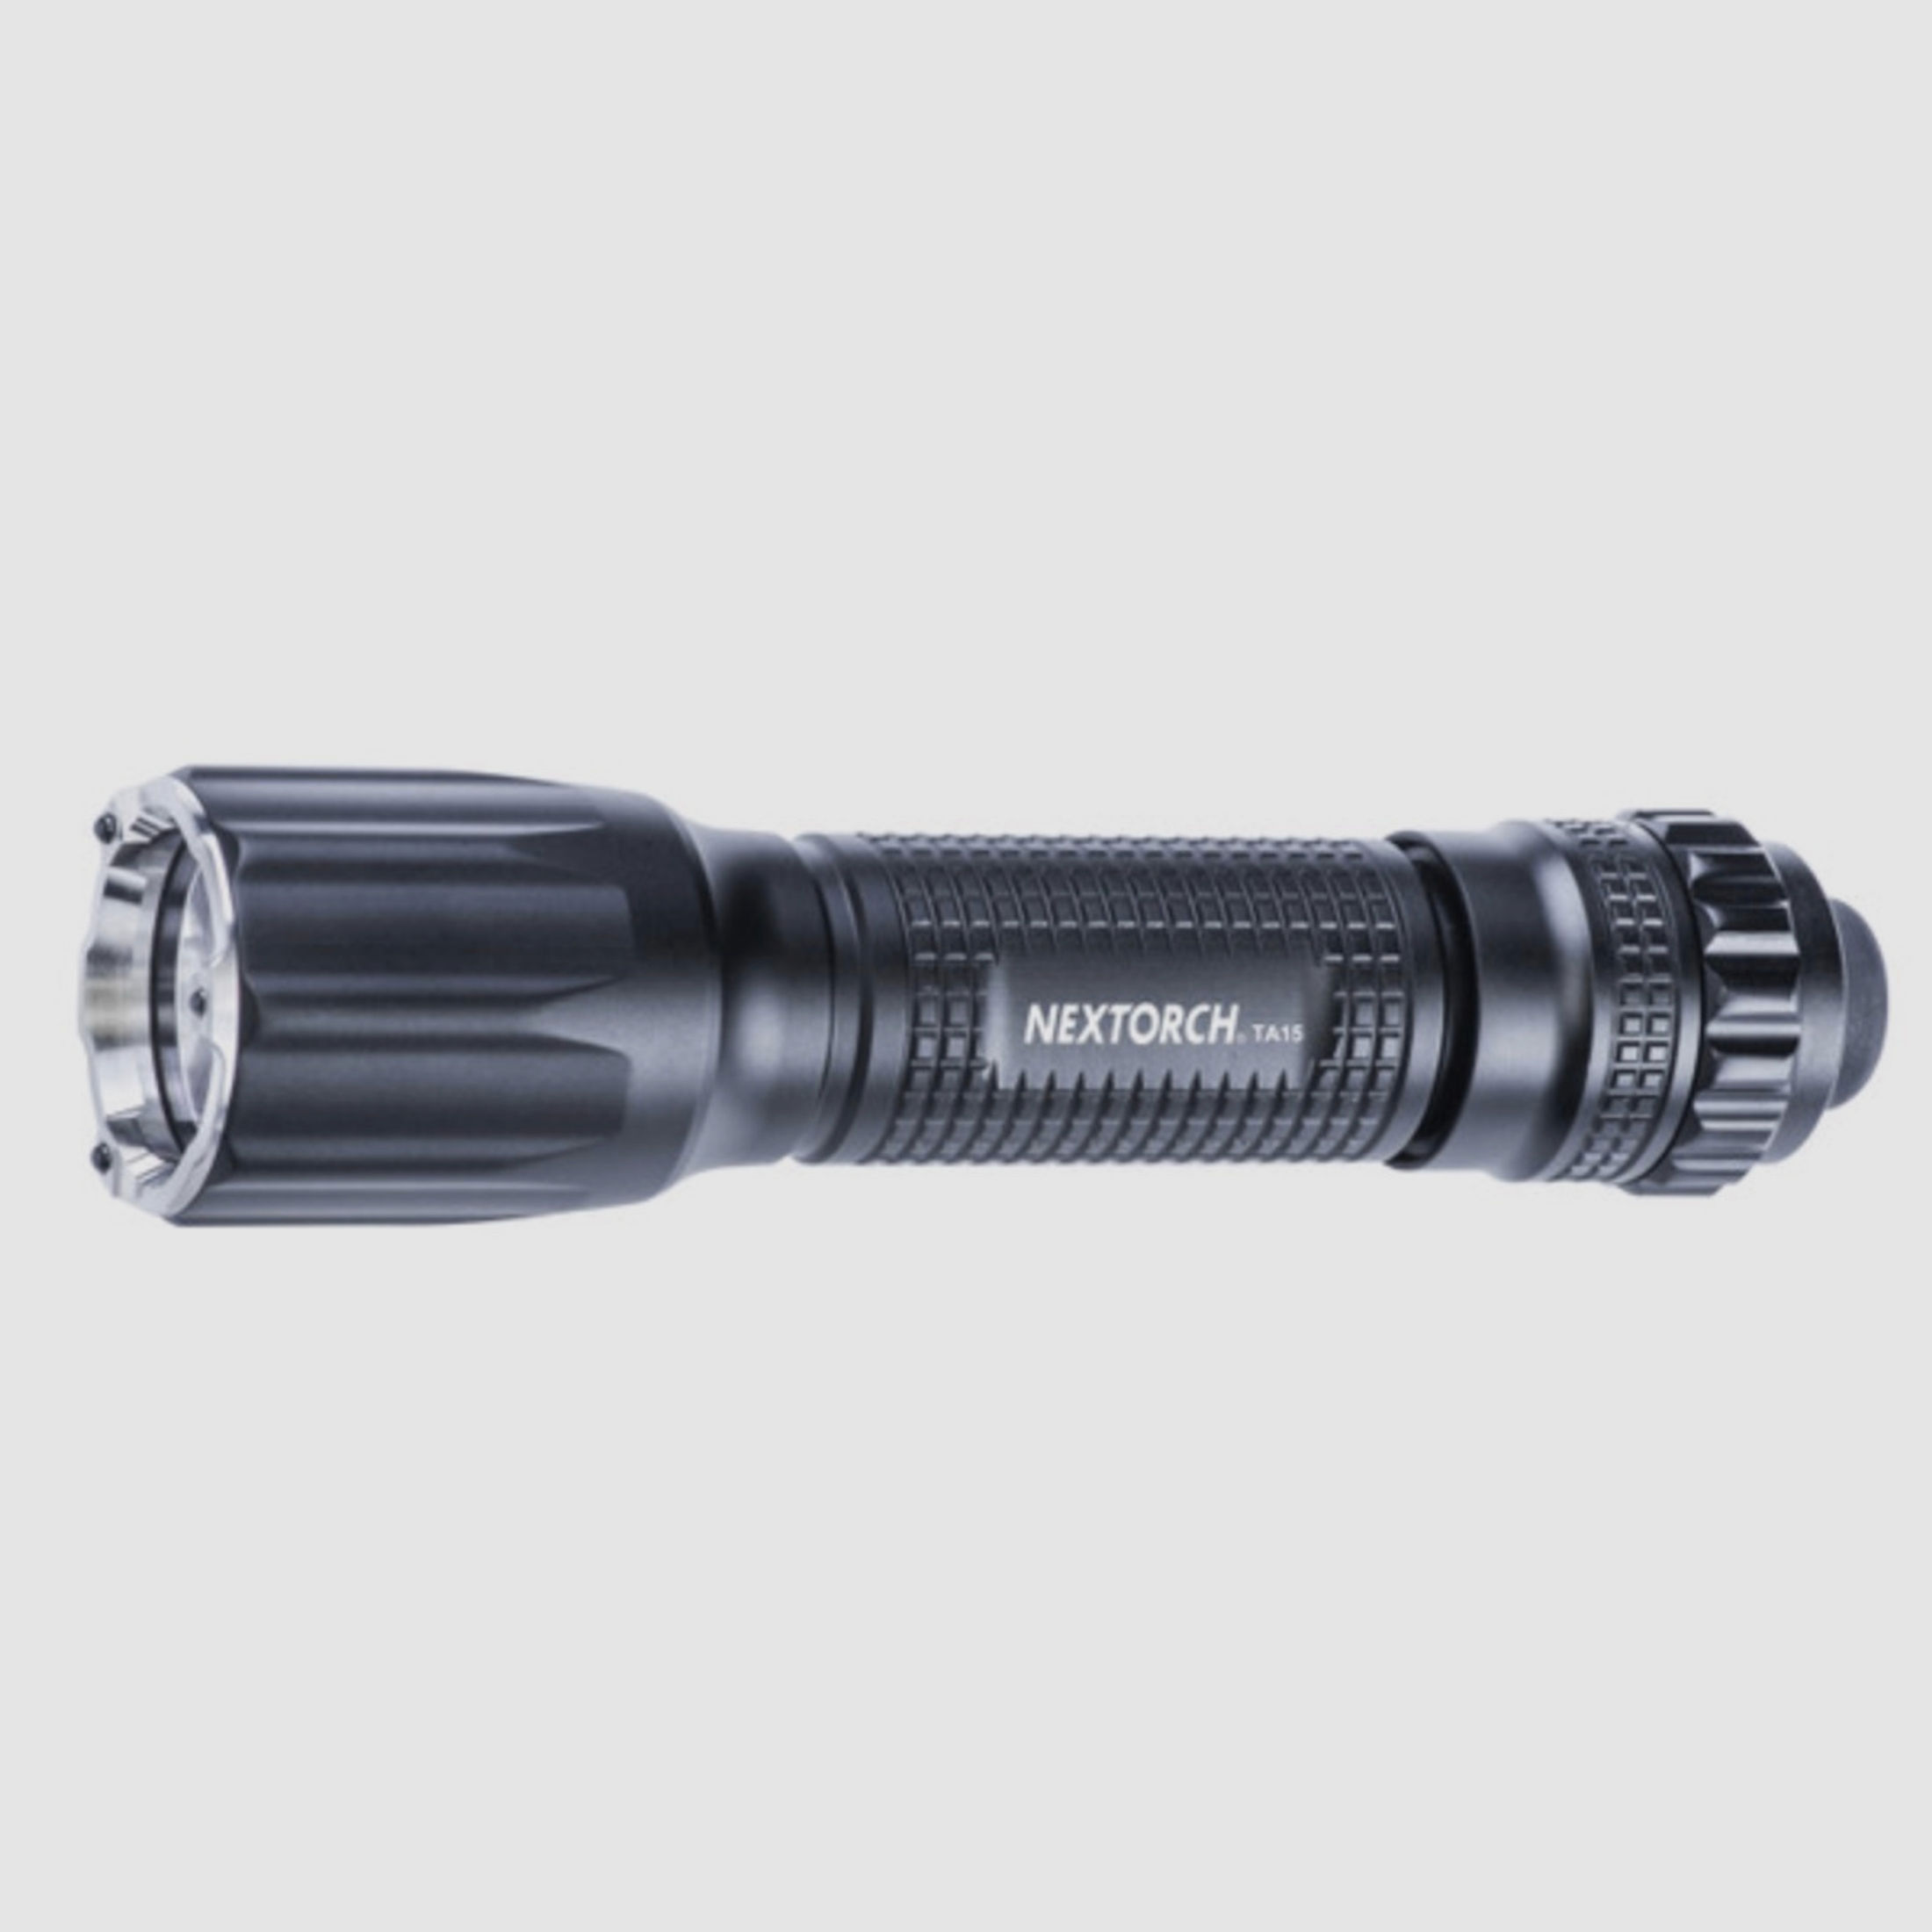 Nextorch TA15 V2.0 Preppertaschenlampe 700 Lumen mit Glasbrecher